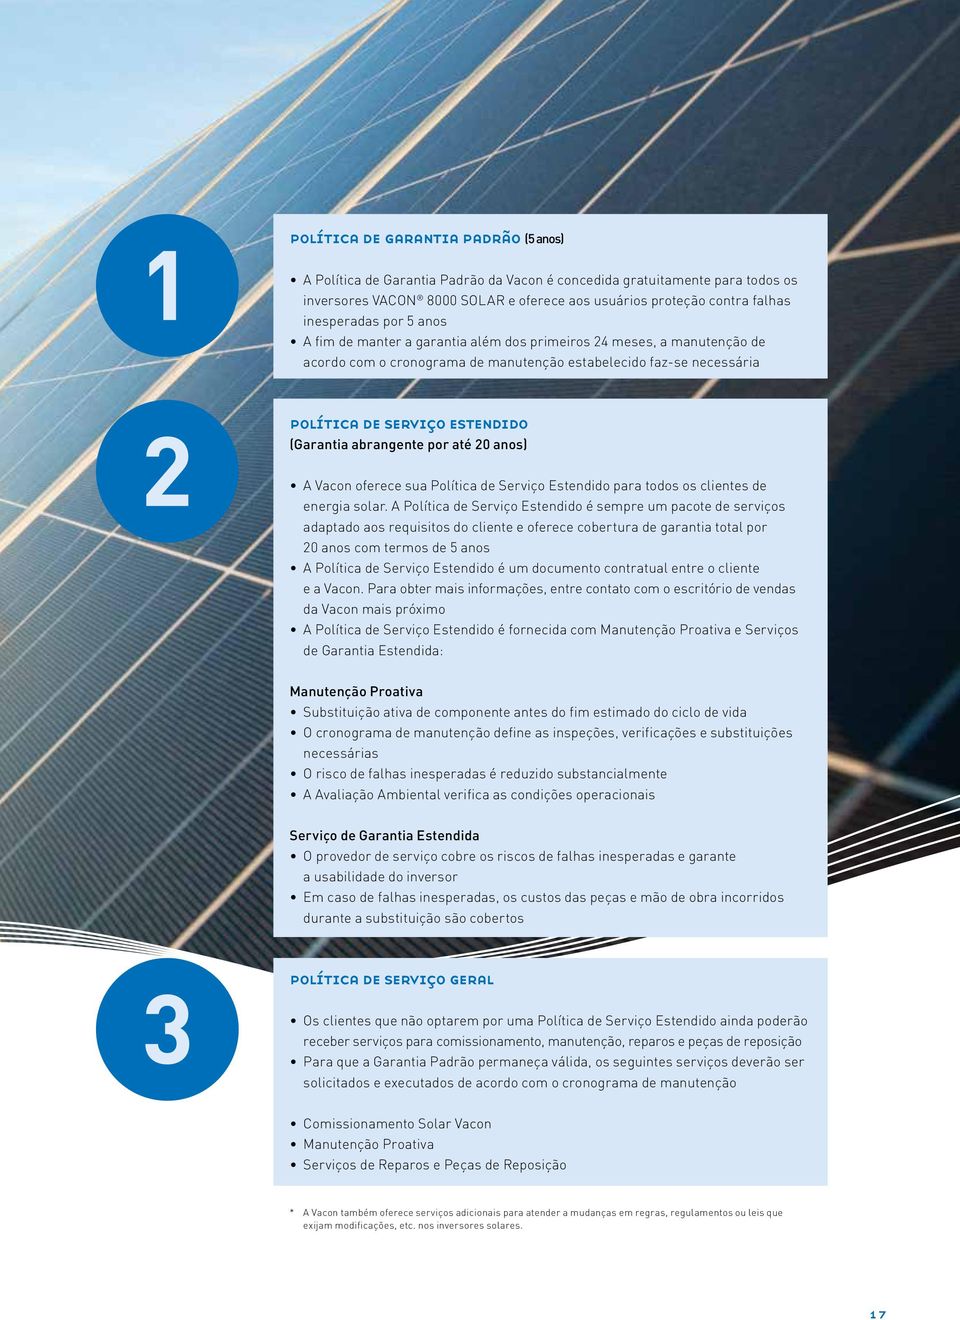 (Garantia abrangente por até 20 anos) A Vacon oferece sua Política de Serviço Estendido para todos os clientes de energia solar.